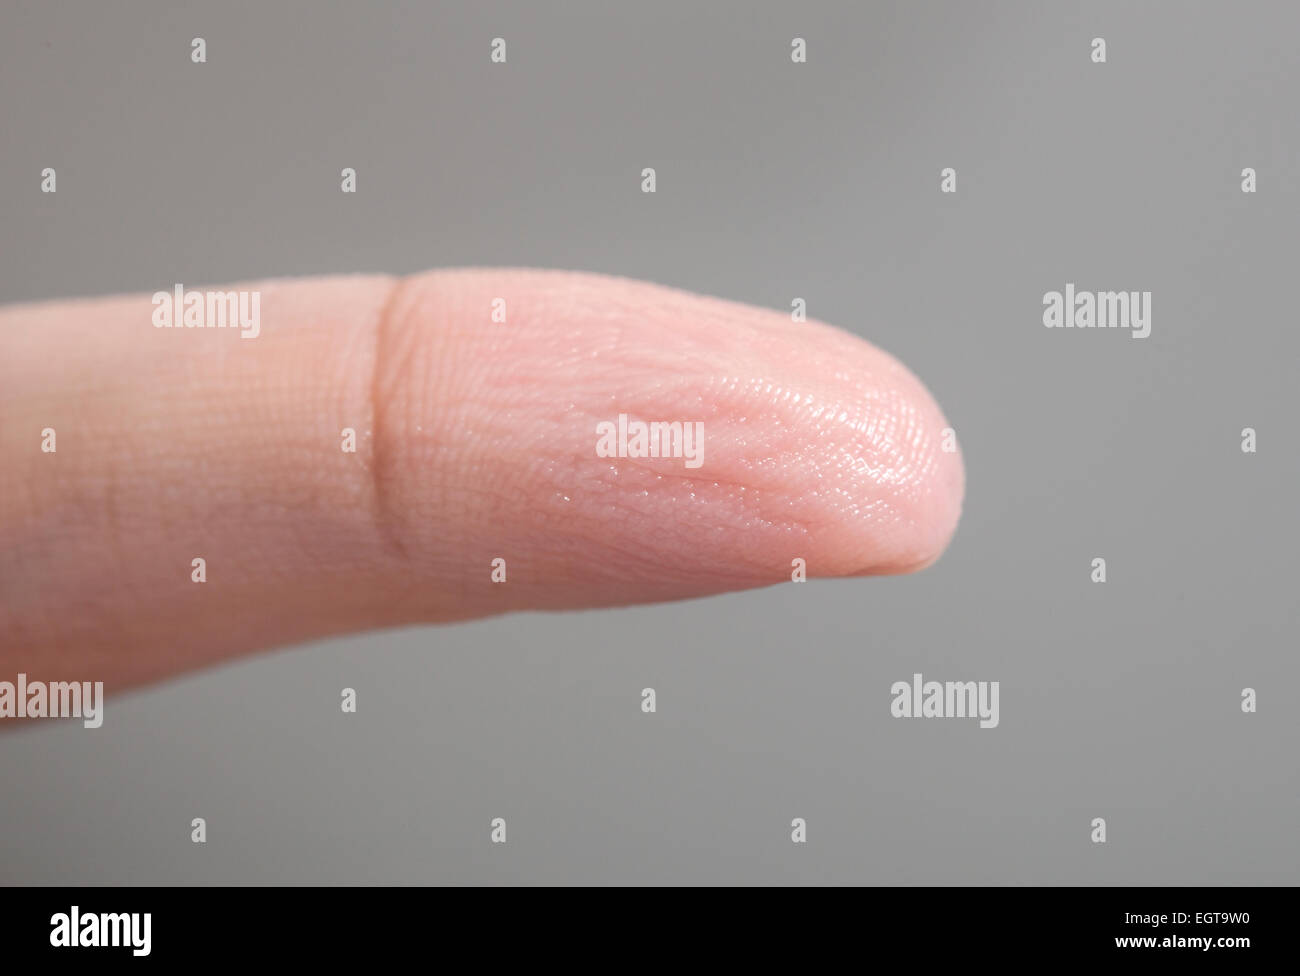 Faltige Haut der Finger wegen der lange Zeit im Wasser. Stockfoto